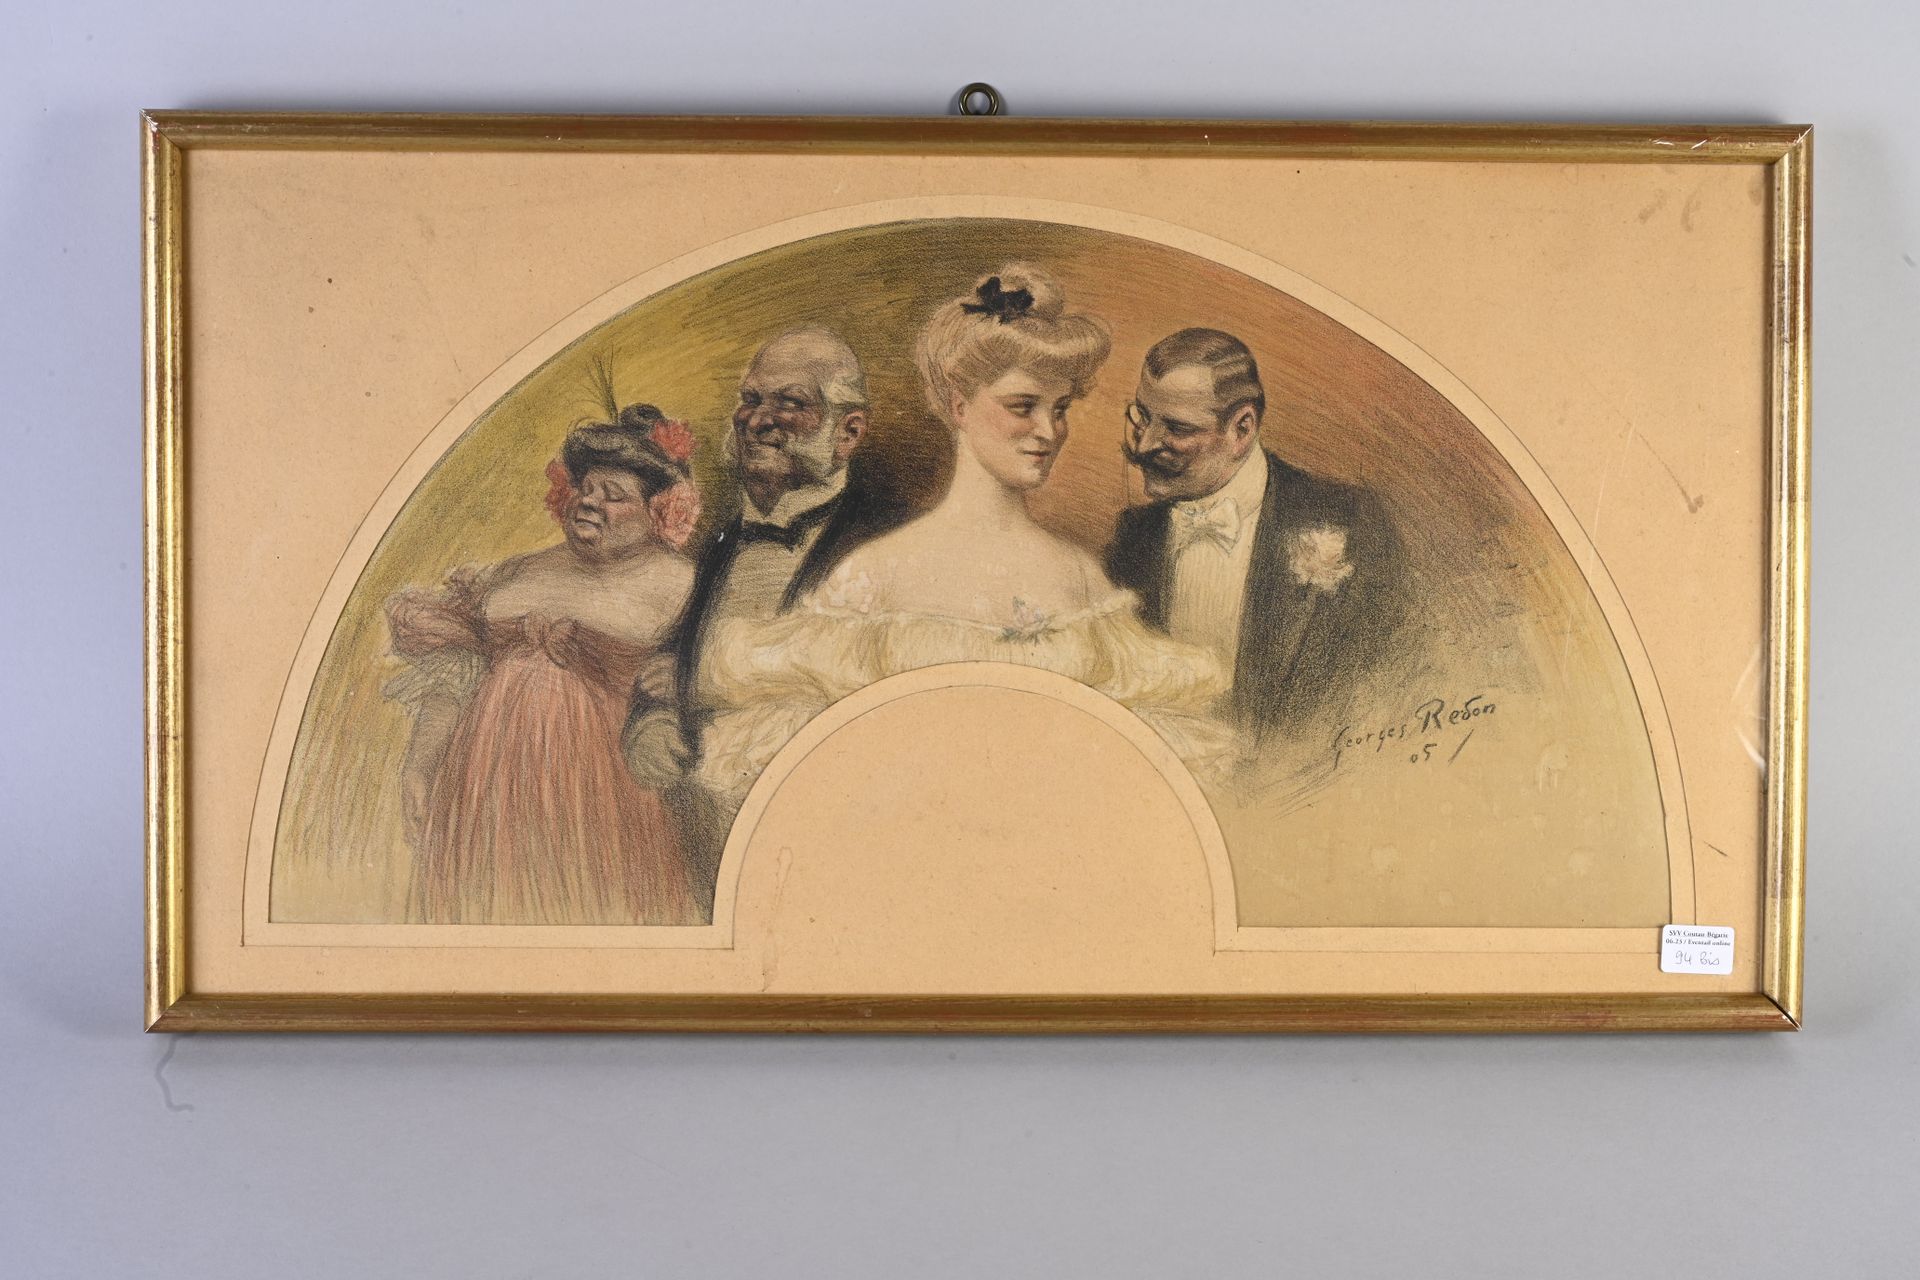 Null 94 BIS
Soirée galante，仿照乔治-雷东，约1905年
彩色石版画纸扇面，描绘了一个优雅夜晚的殷勤场景。一个男人接近一个年轻的女人，&hellip;